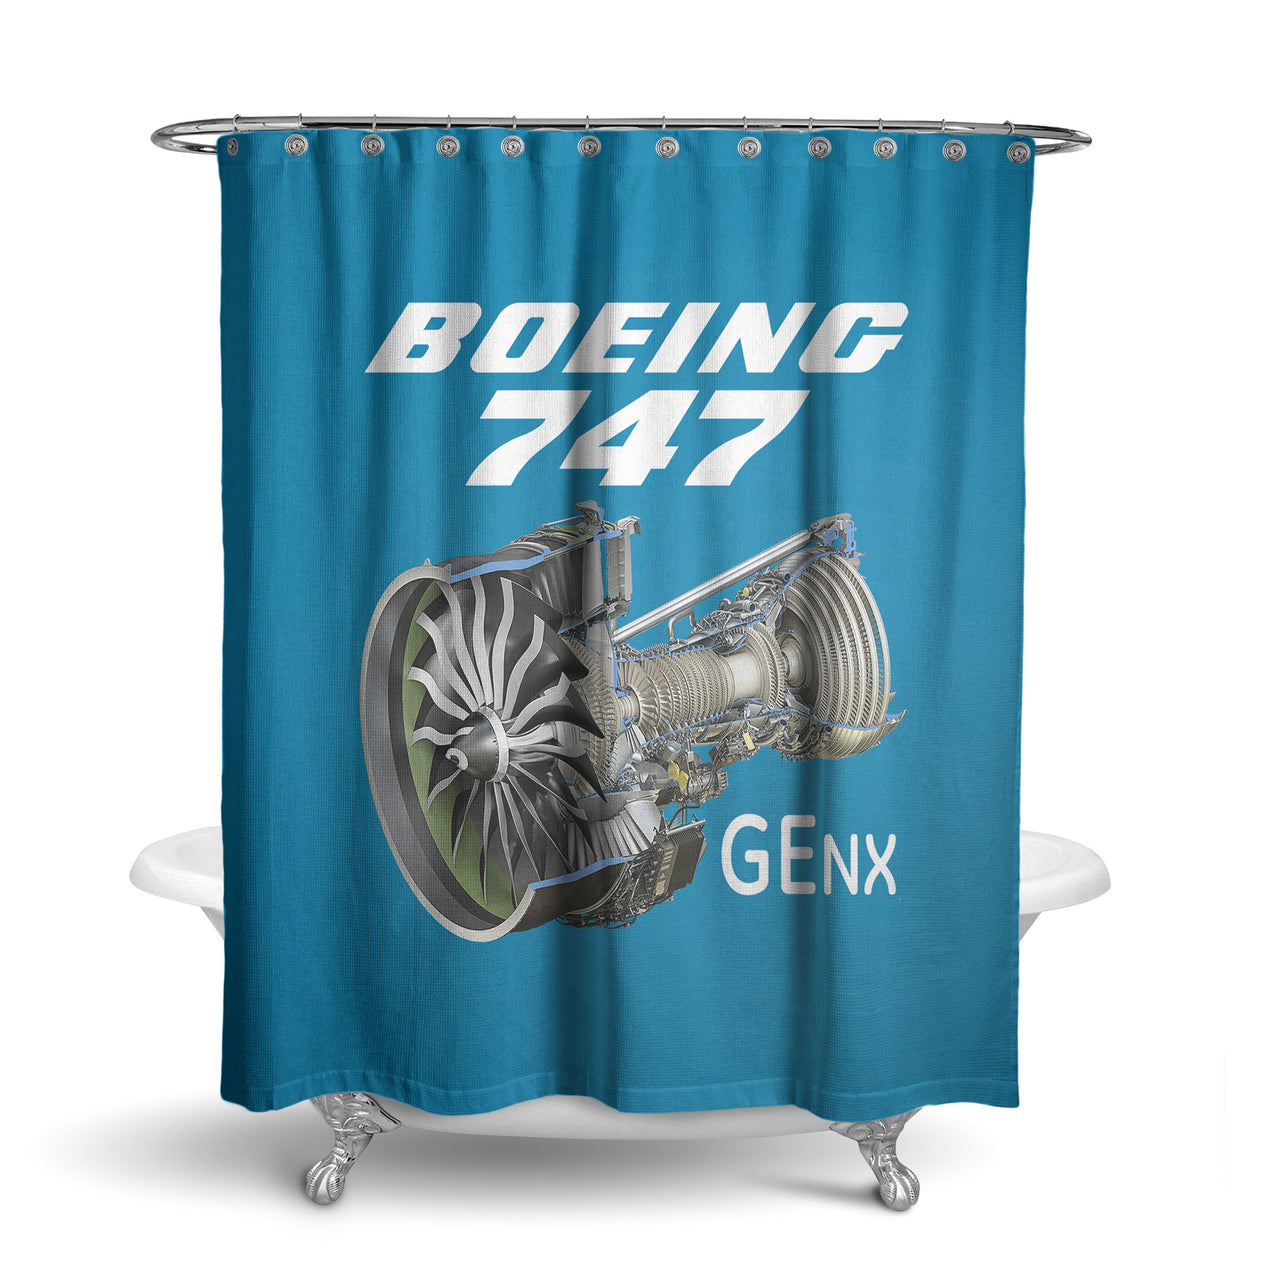 Boeing 747 & GENX Engine Designed Shower Curtains